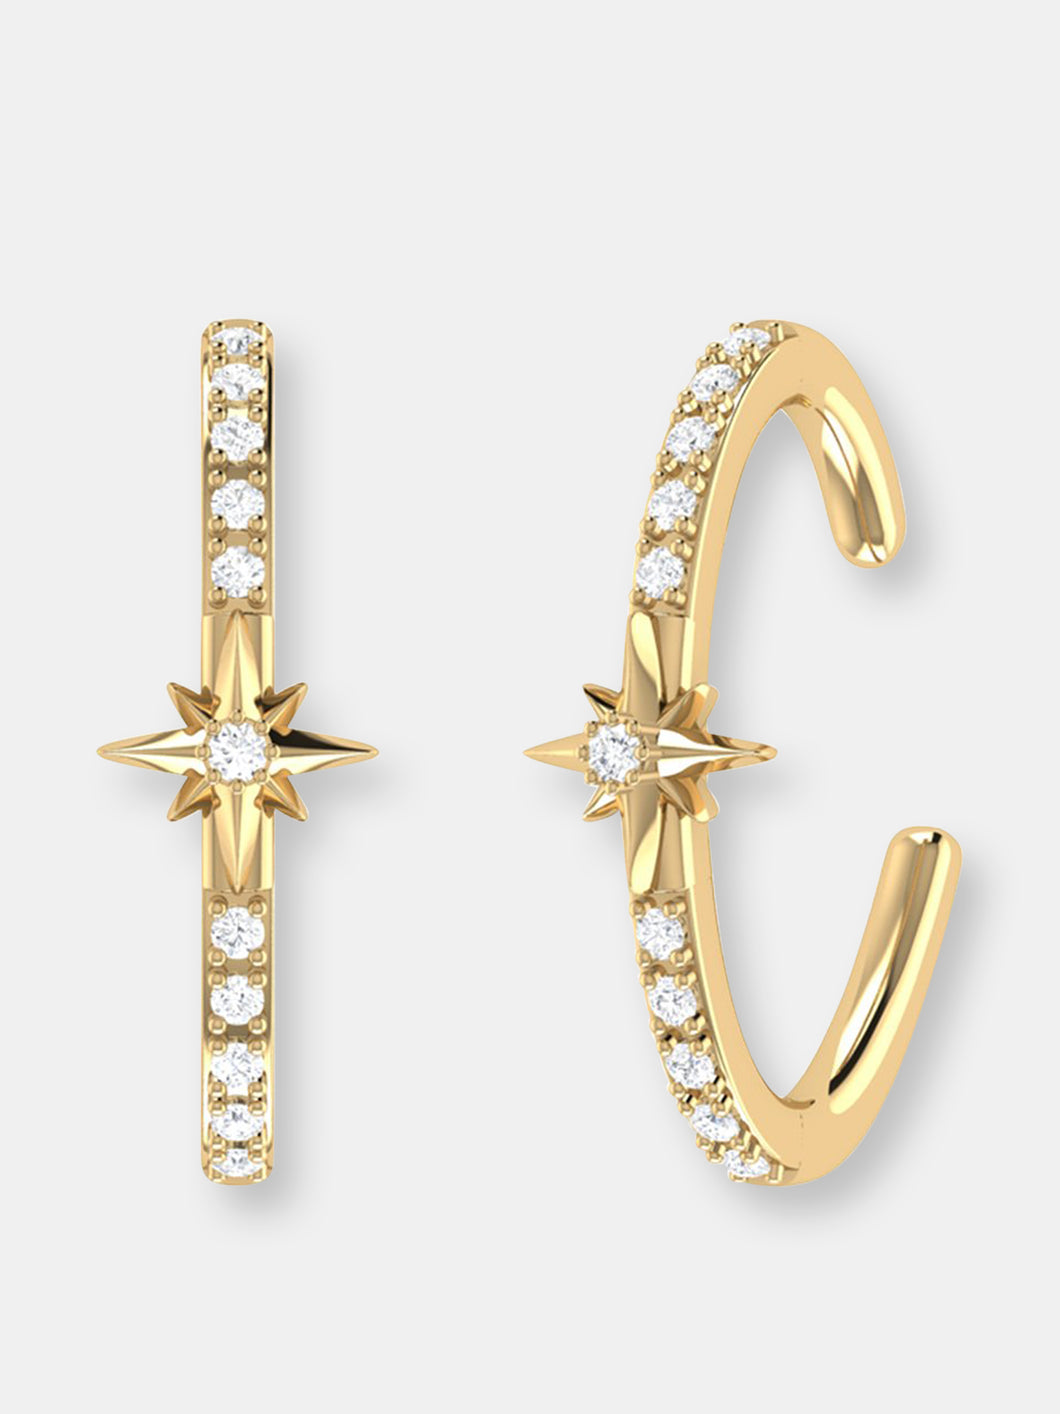 Starry Lane Diamond Ear Cuffs In 14K Yellow Gold Vermeil On Sterling Silver